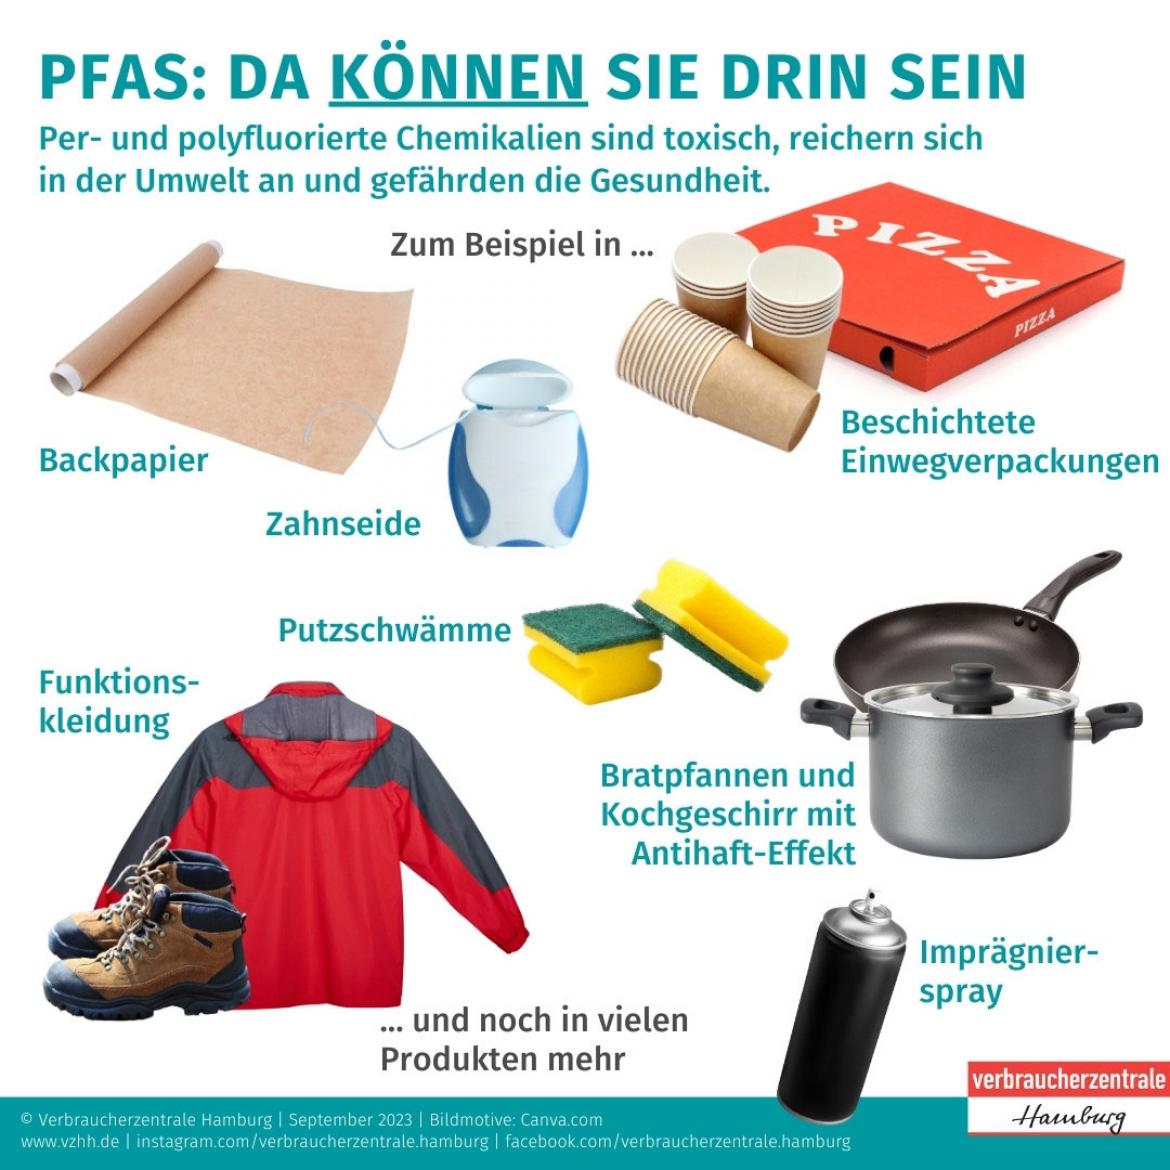 PFAS: Produkte, die PFAS enthalten können